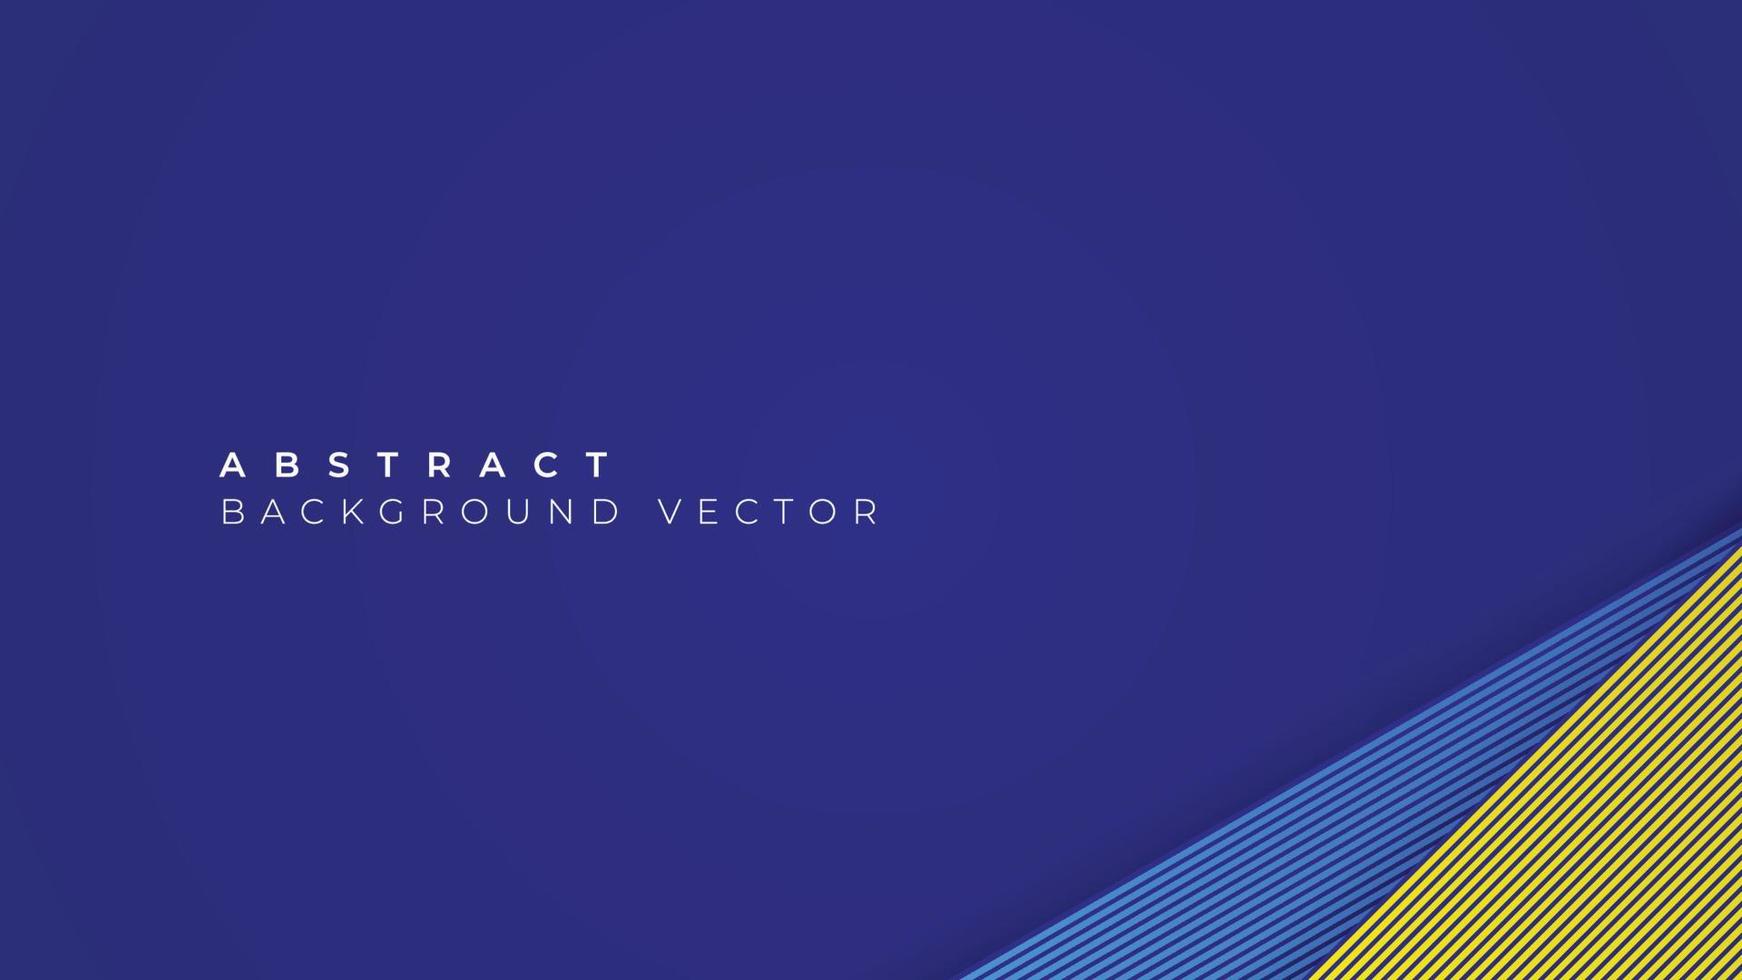 sfondo astratto moderno con strisce blu e gialle. contorni geometrici per poster, volantini, siti Web, copertine, banner, pubblicità. illustrazione vettoriale